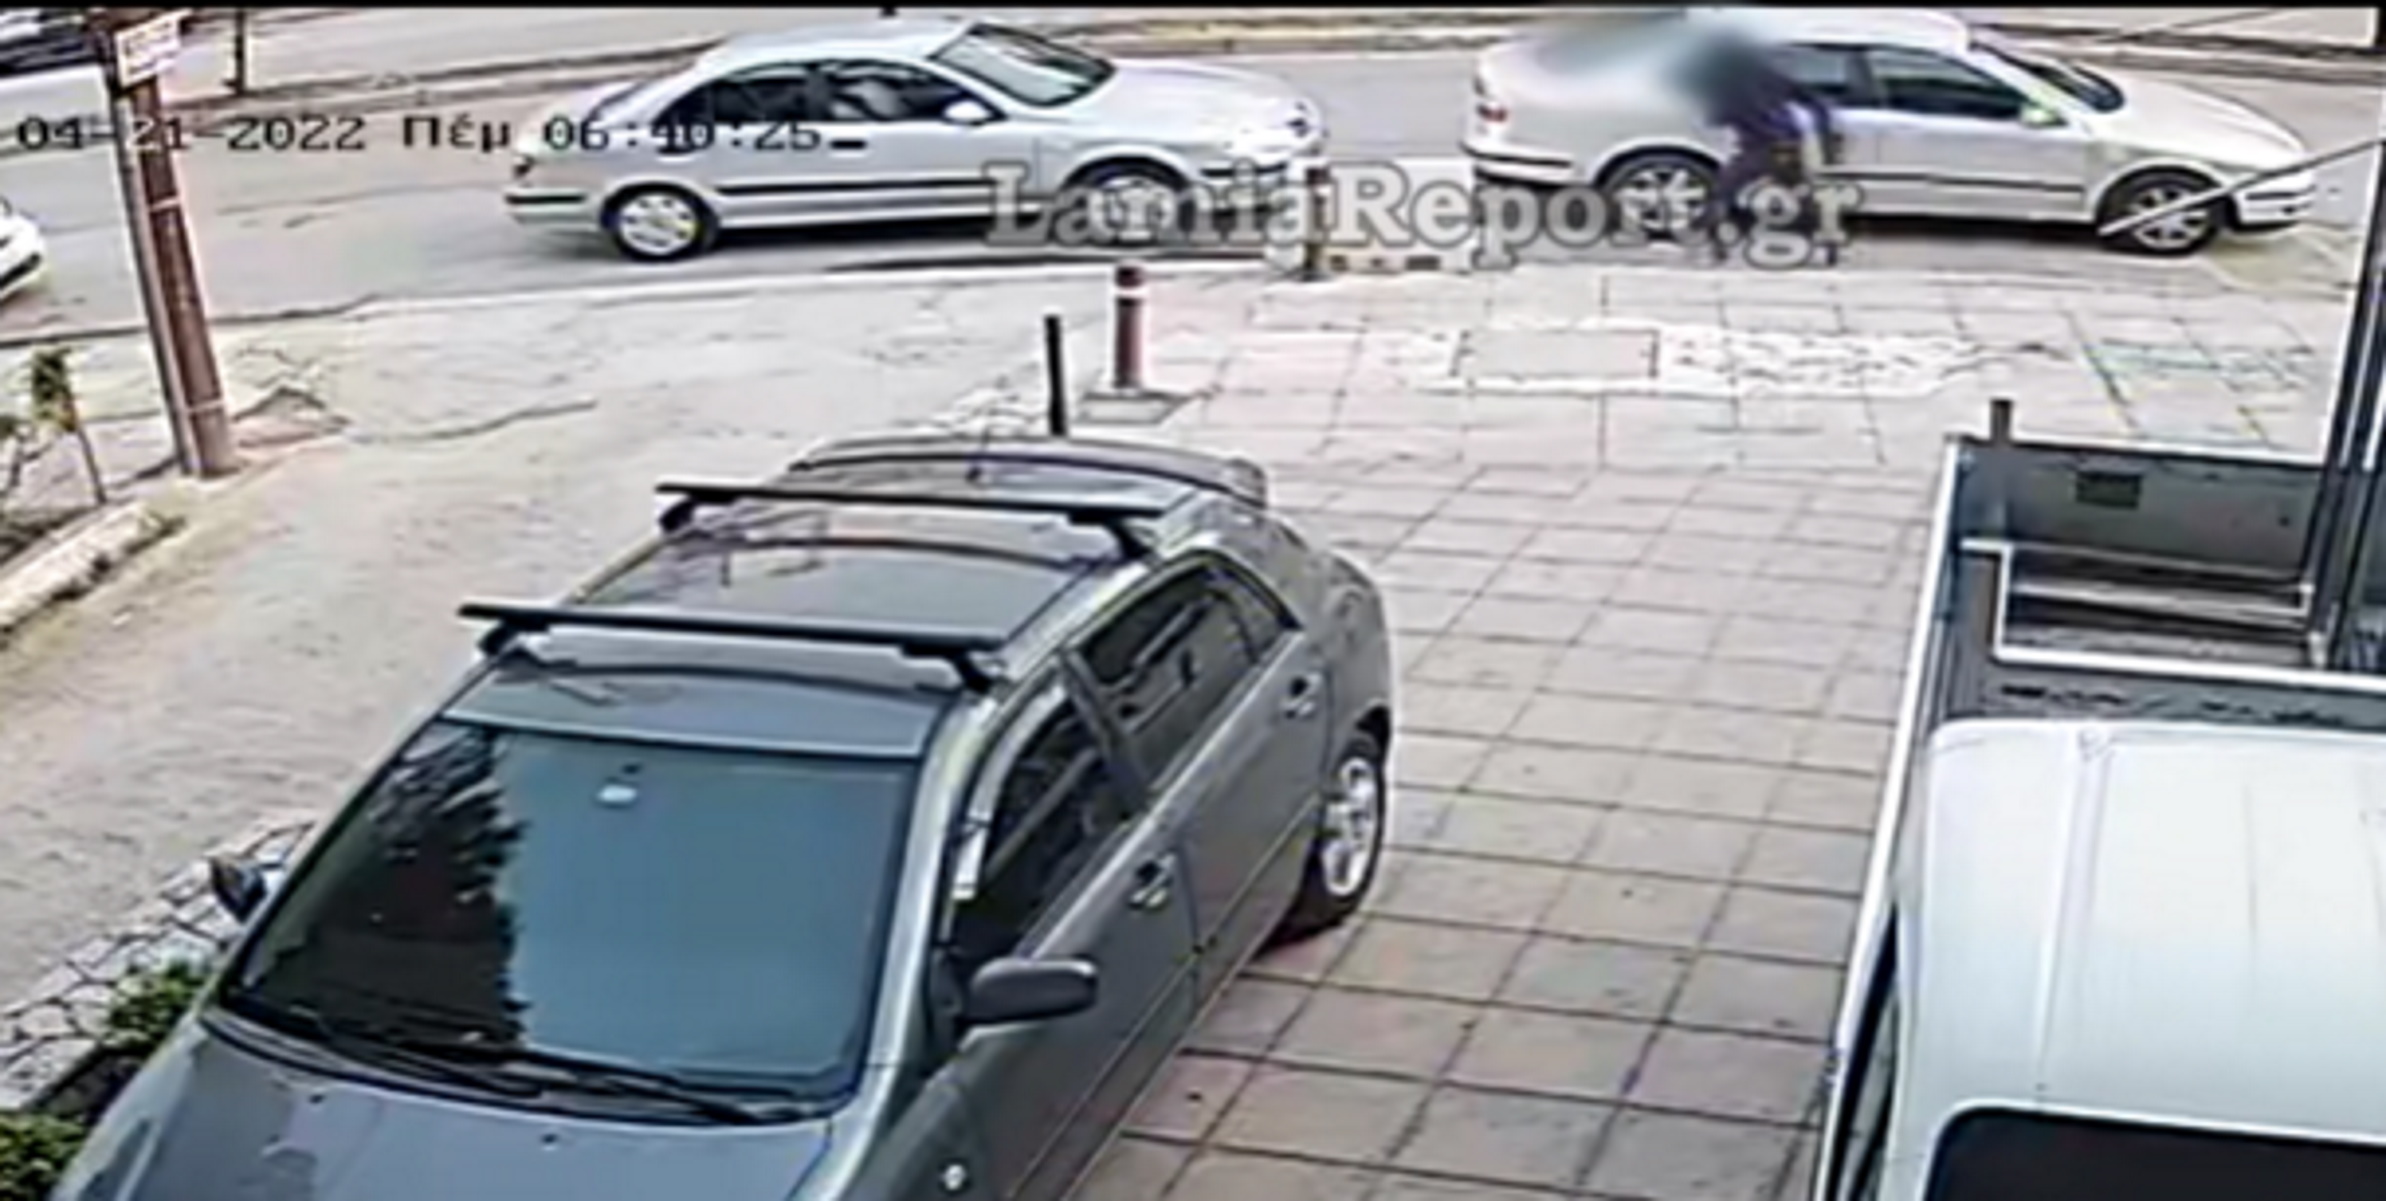 Λαμία: Η κάμερα «έπιασε» τον κλέφτη – Η στιγμή που αρπάζει χρήματα και κινητό από παρκαρισμένο αυτοκίνητο